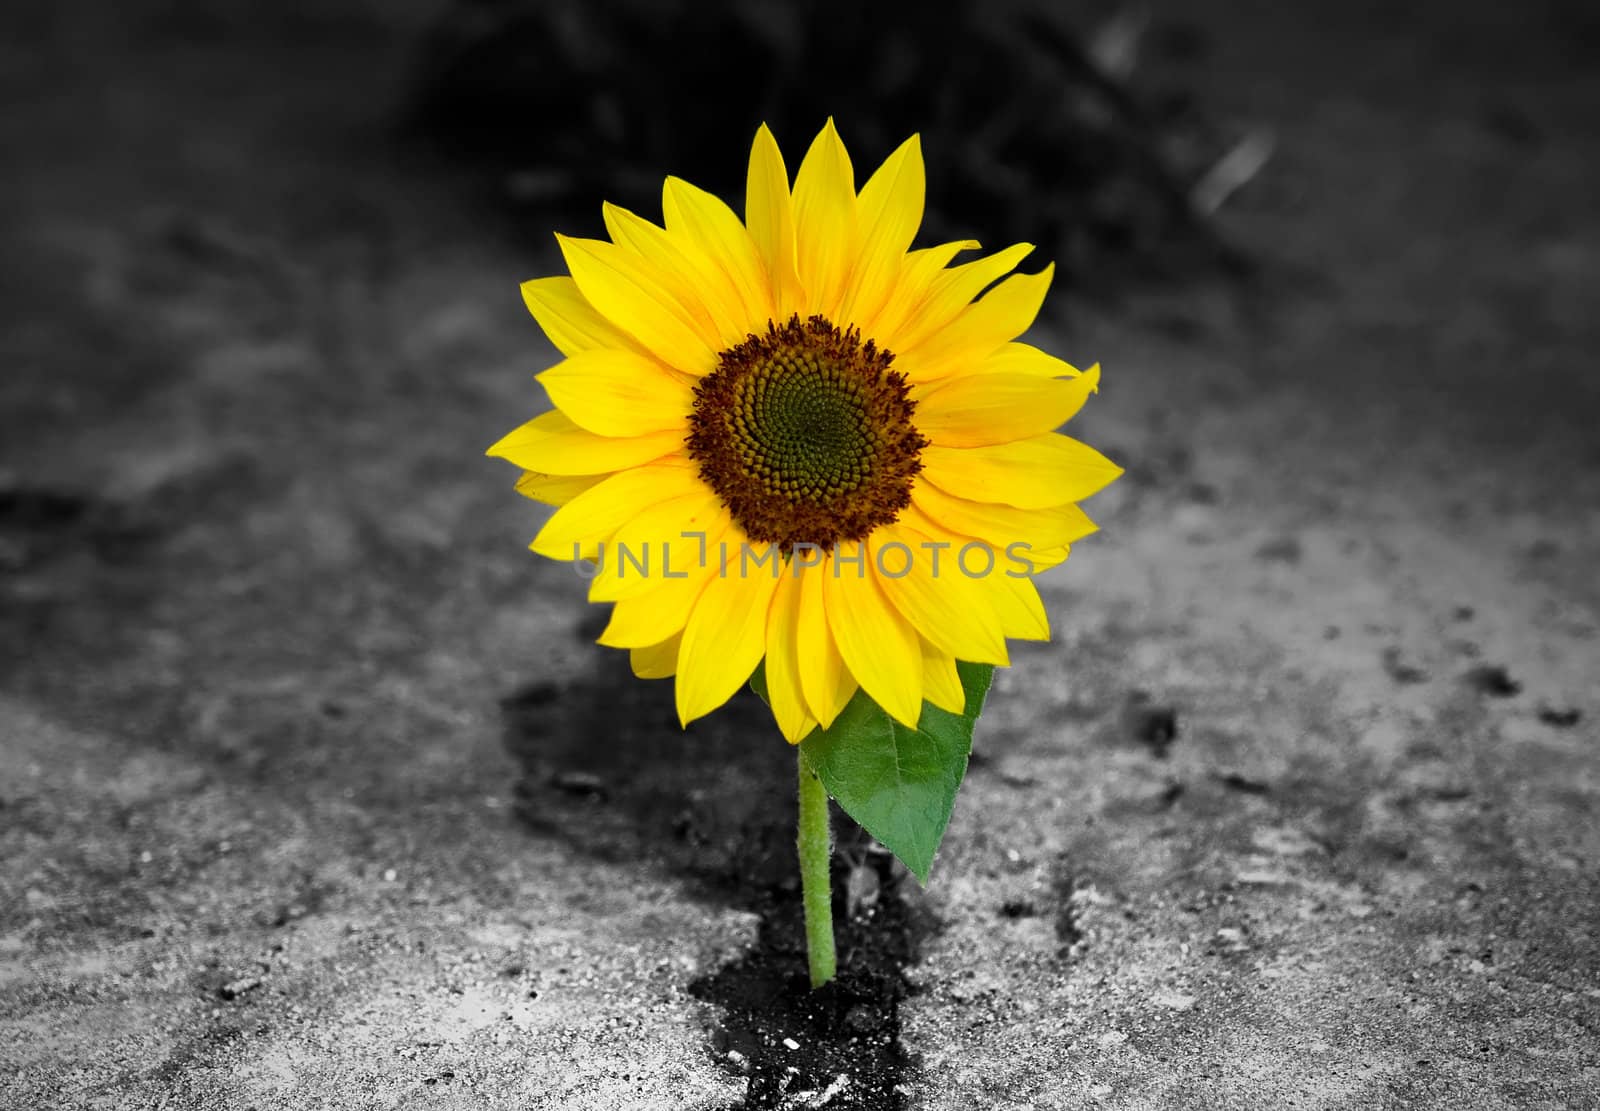 Sunflower on monochrome background